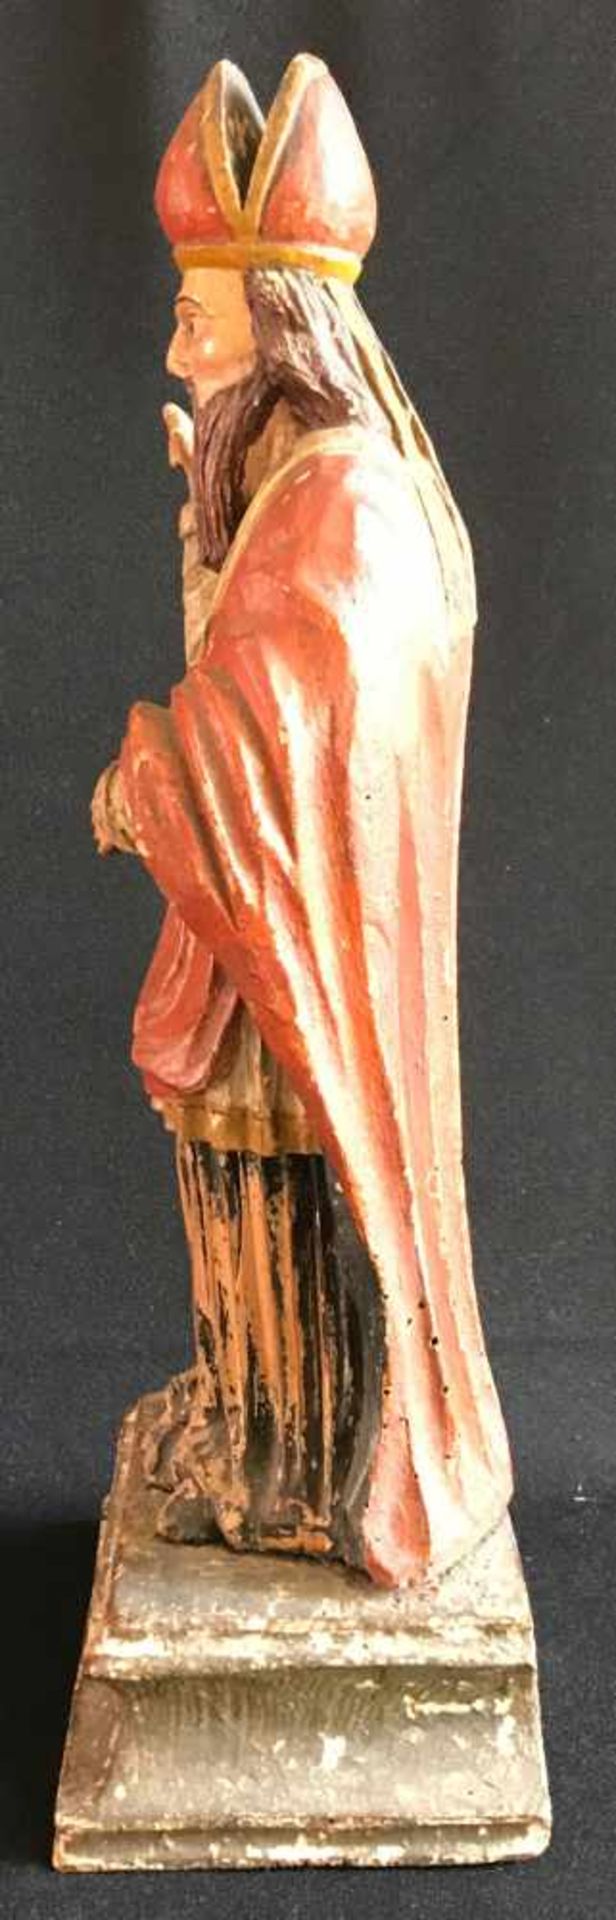 Bischof mit Segensgestus, böhmisch?, 1. Hälfte 19. Jh., Holz, farbig gefasst, H. 46 cm, - Bild 4 aus 4